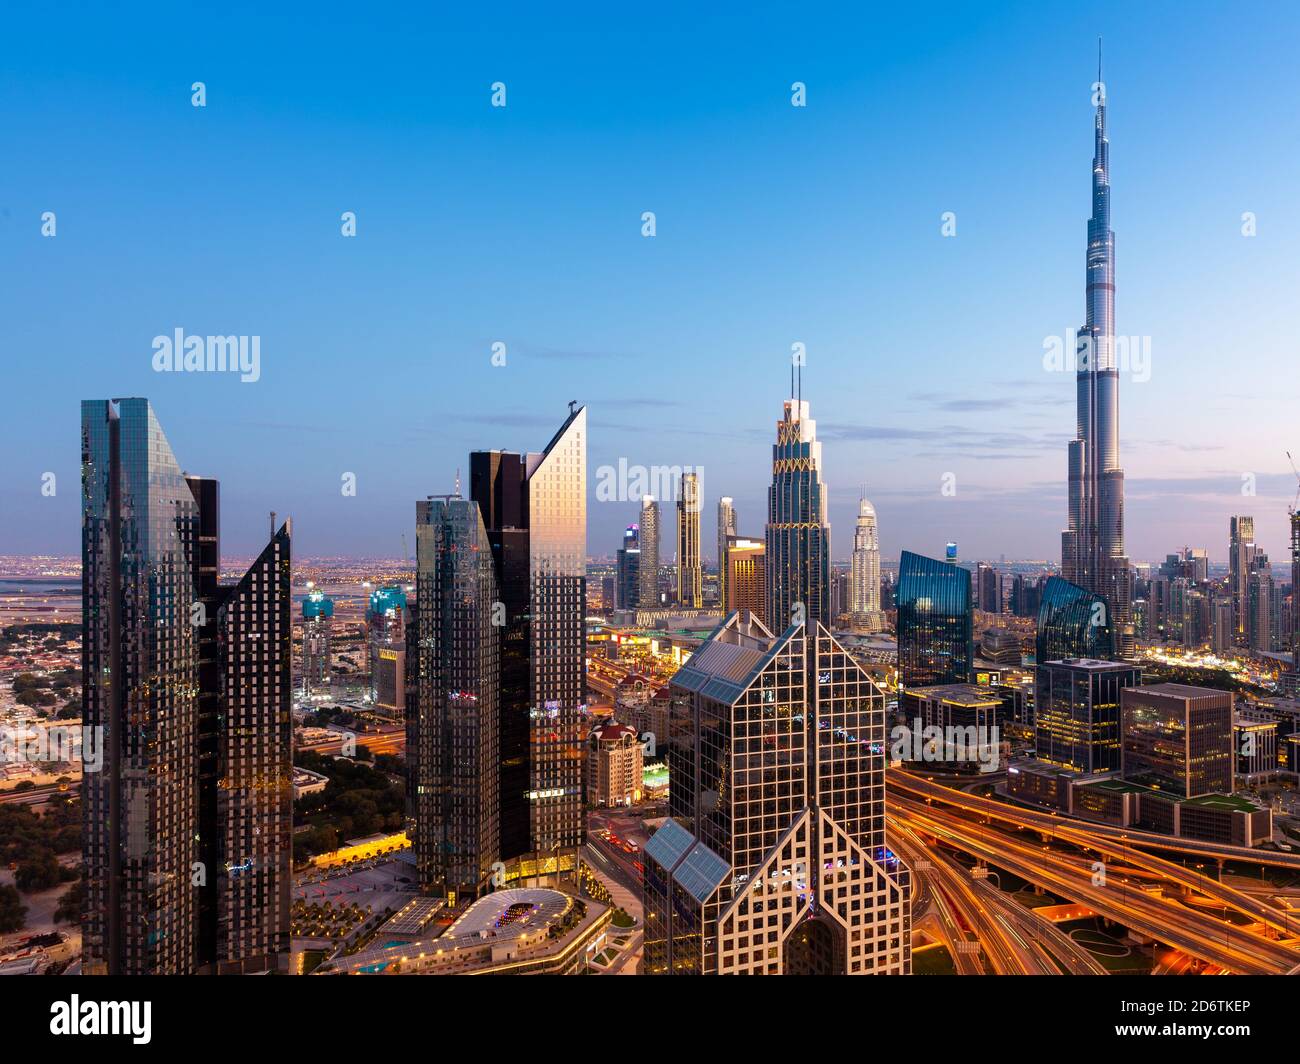 The view of the futuristic Dubai skyline at dusk, UAE. Stock Photo